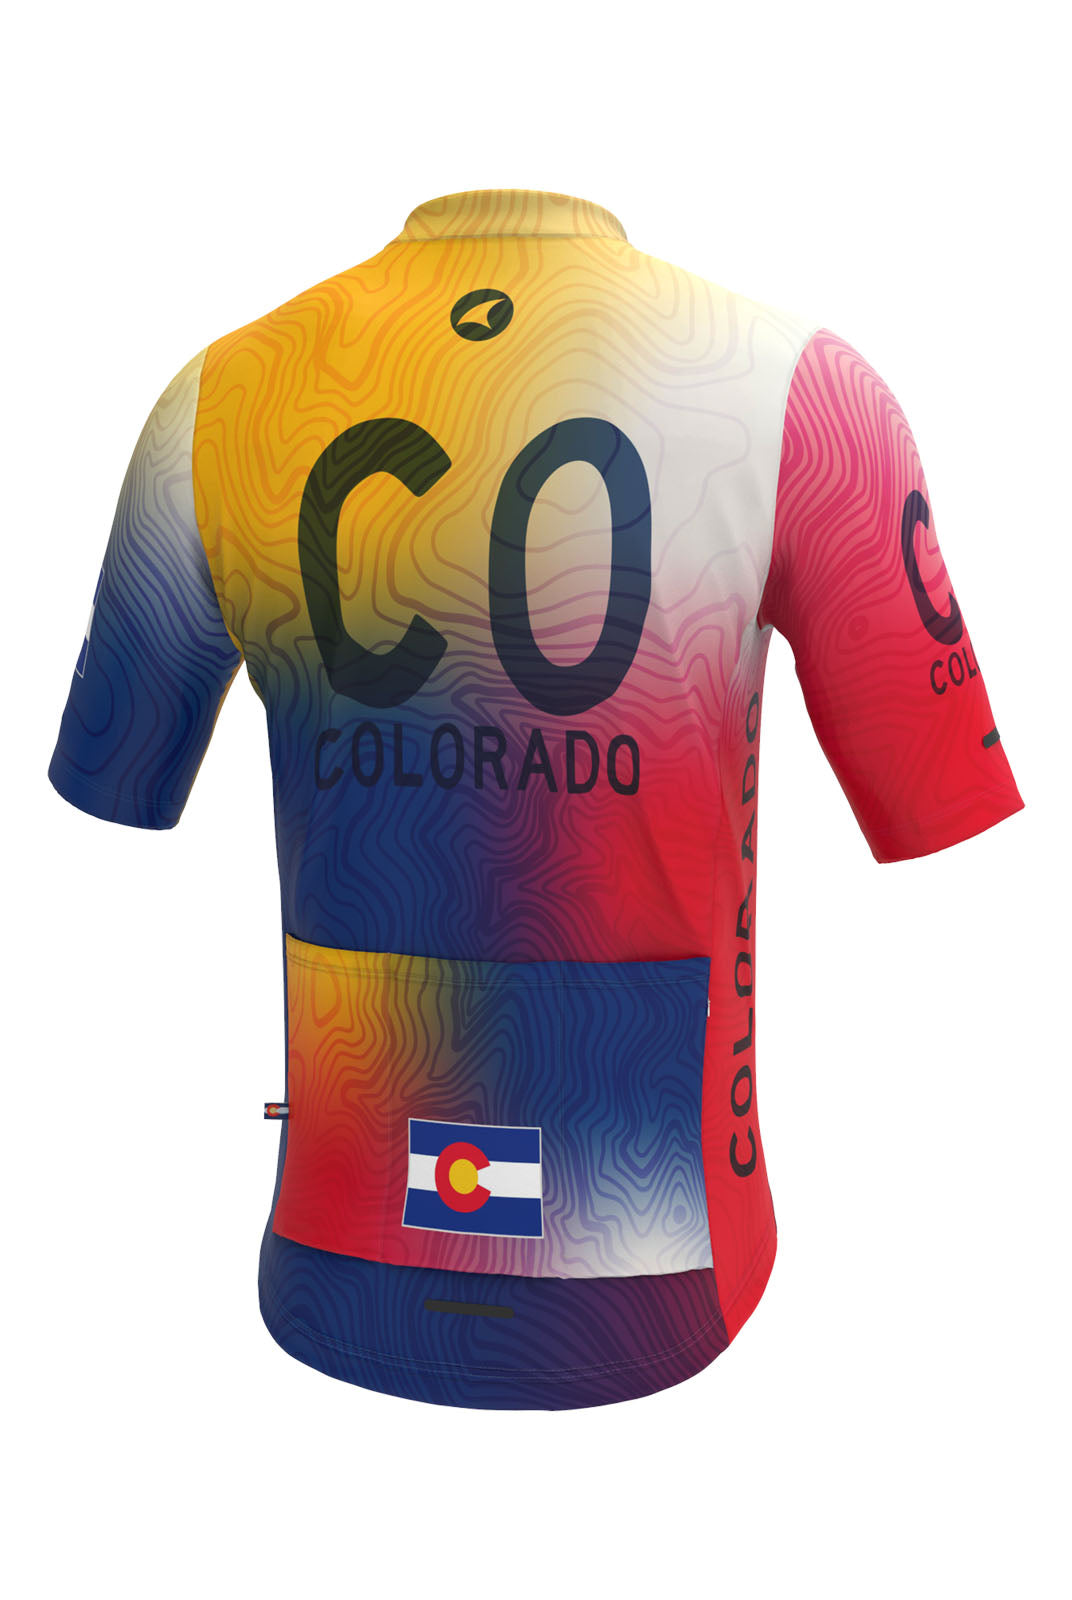 Men's Colorado Flag Bike Jersey - Back View